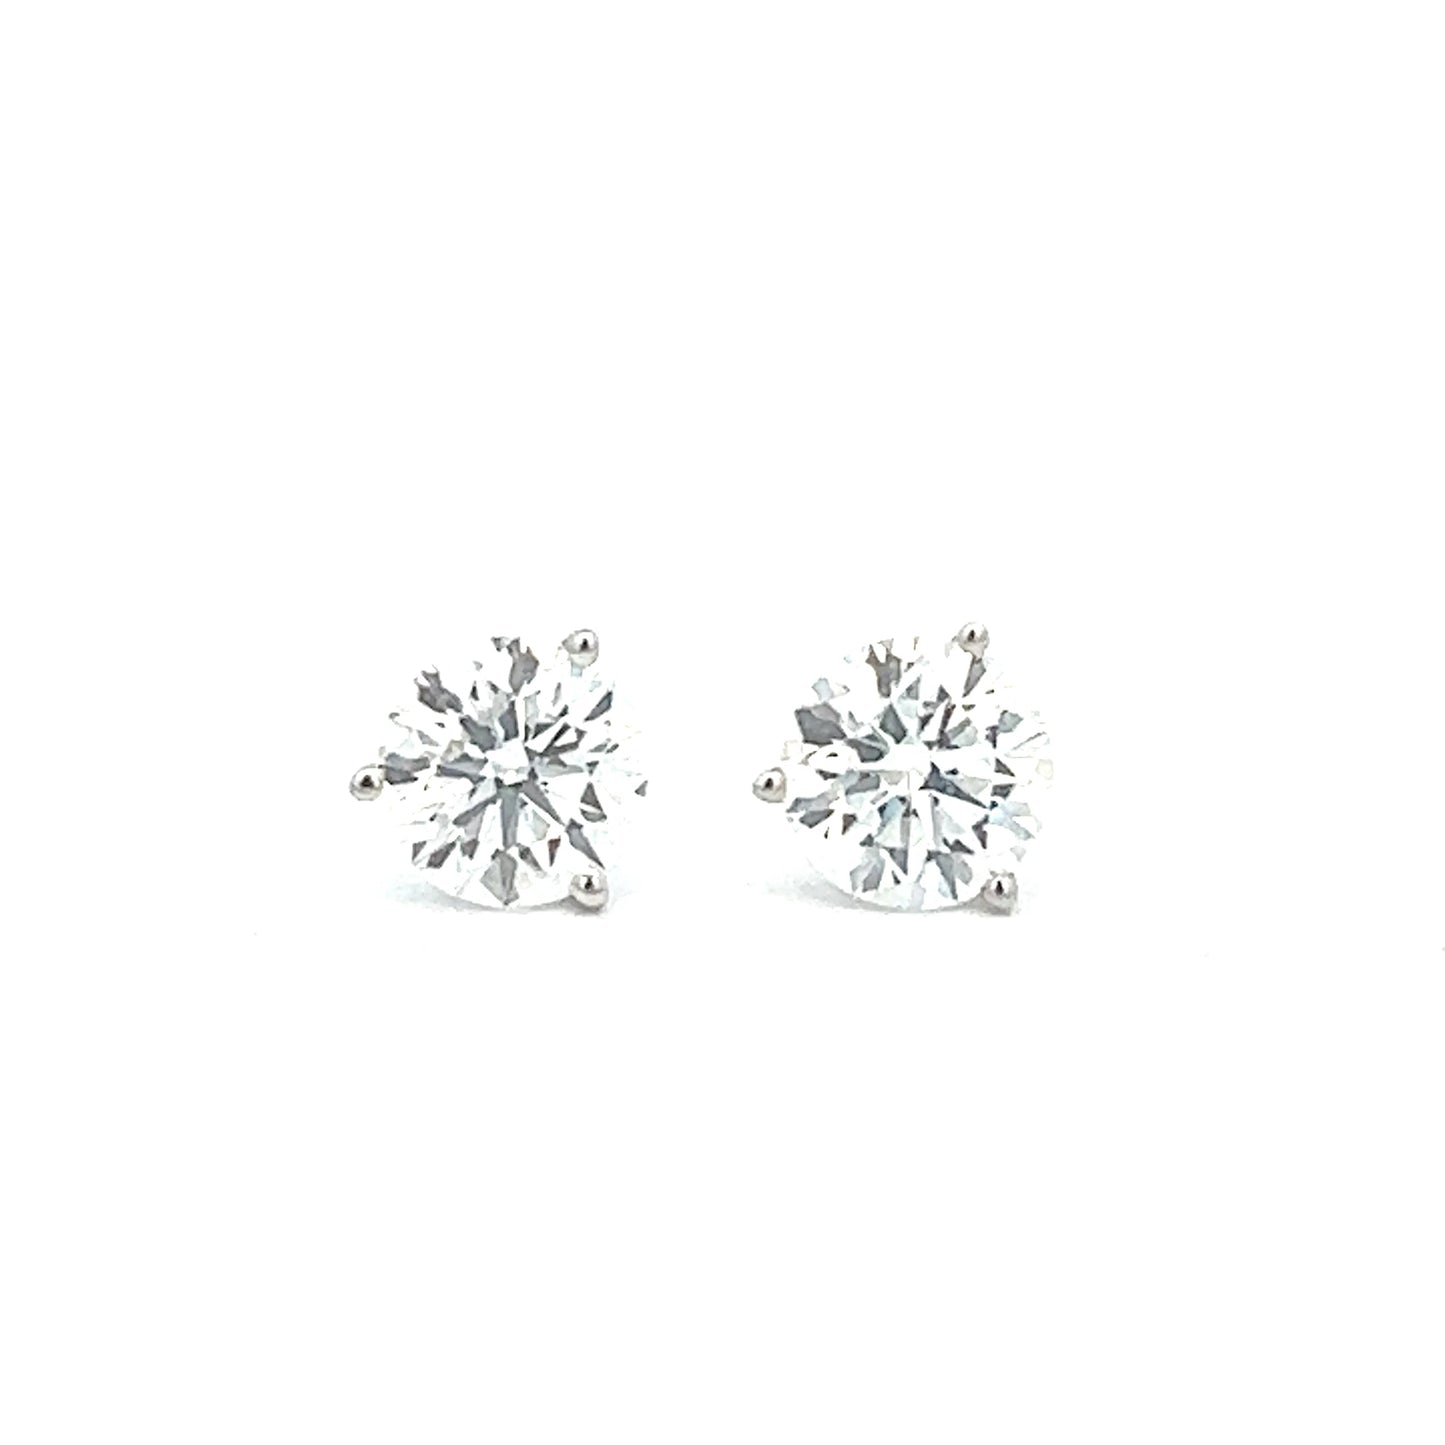 4 Carat Diamond Stud Earrings | 14k White Gold